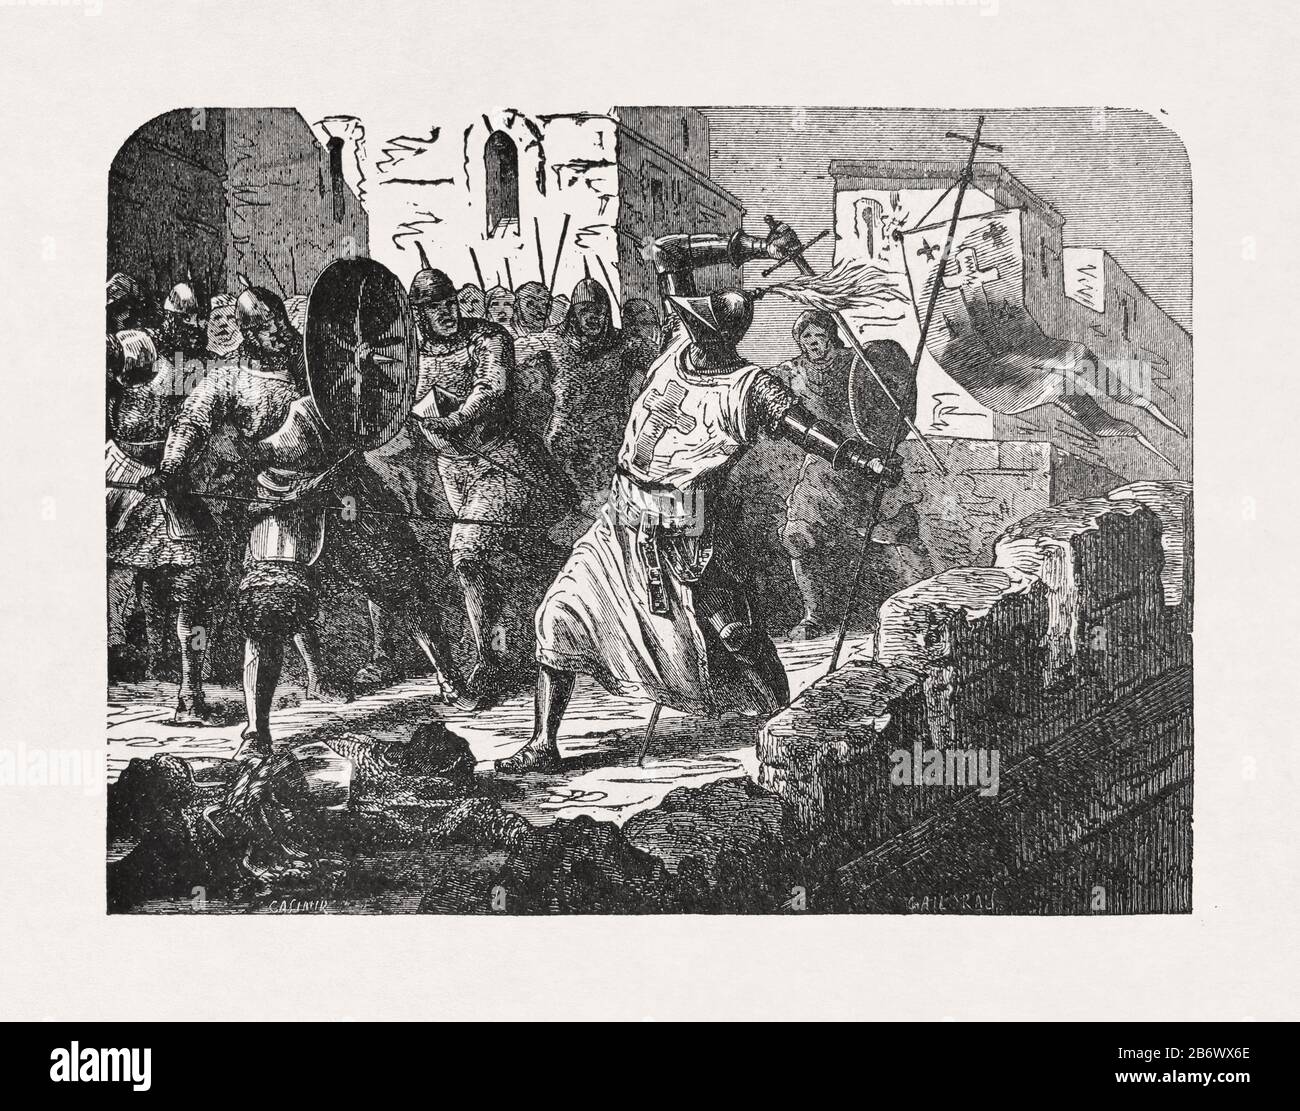 Antigua ilustración de 'Casimir' impresa a finales del siglo 19 que representa un caballero templario luchando por su vida en Jerusalén. Foto de stock